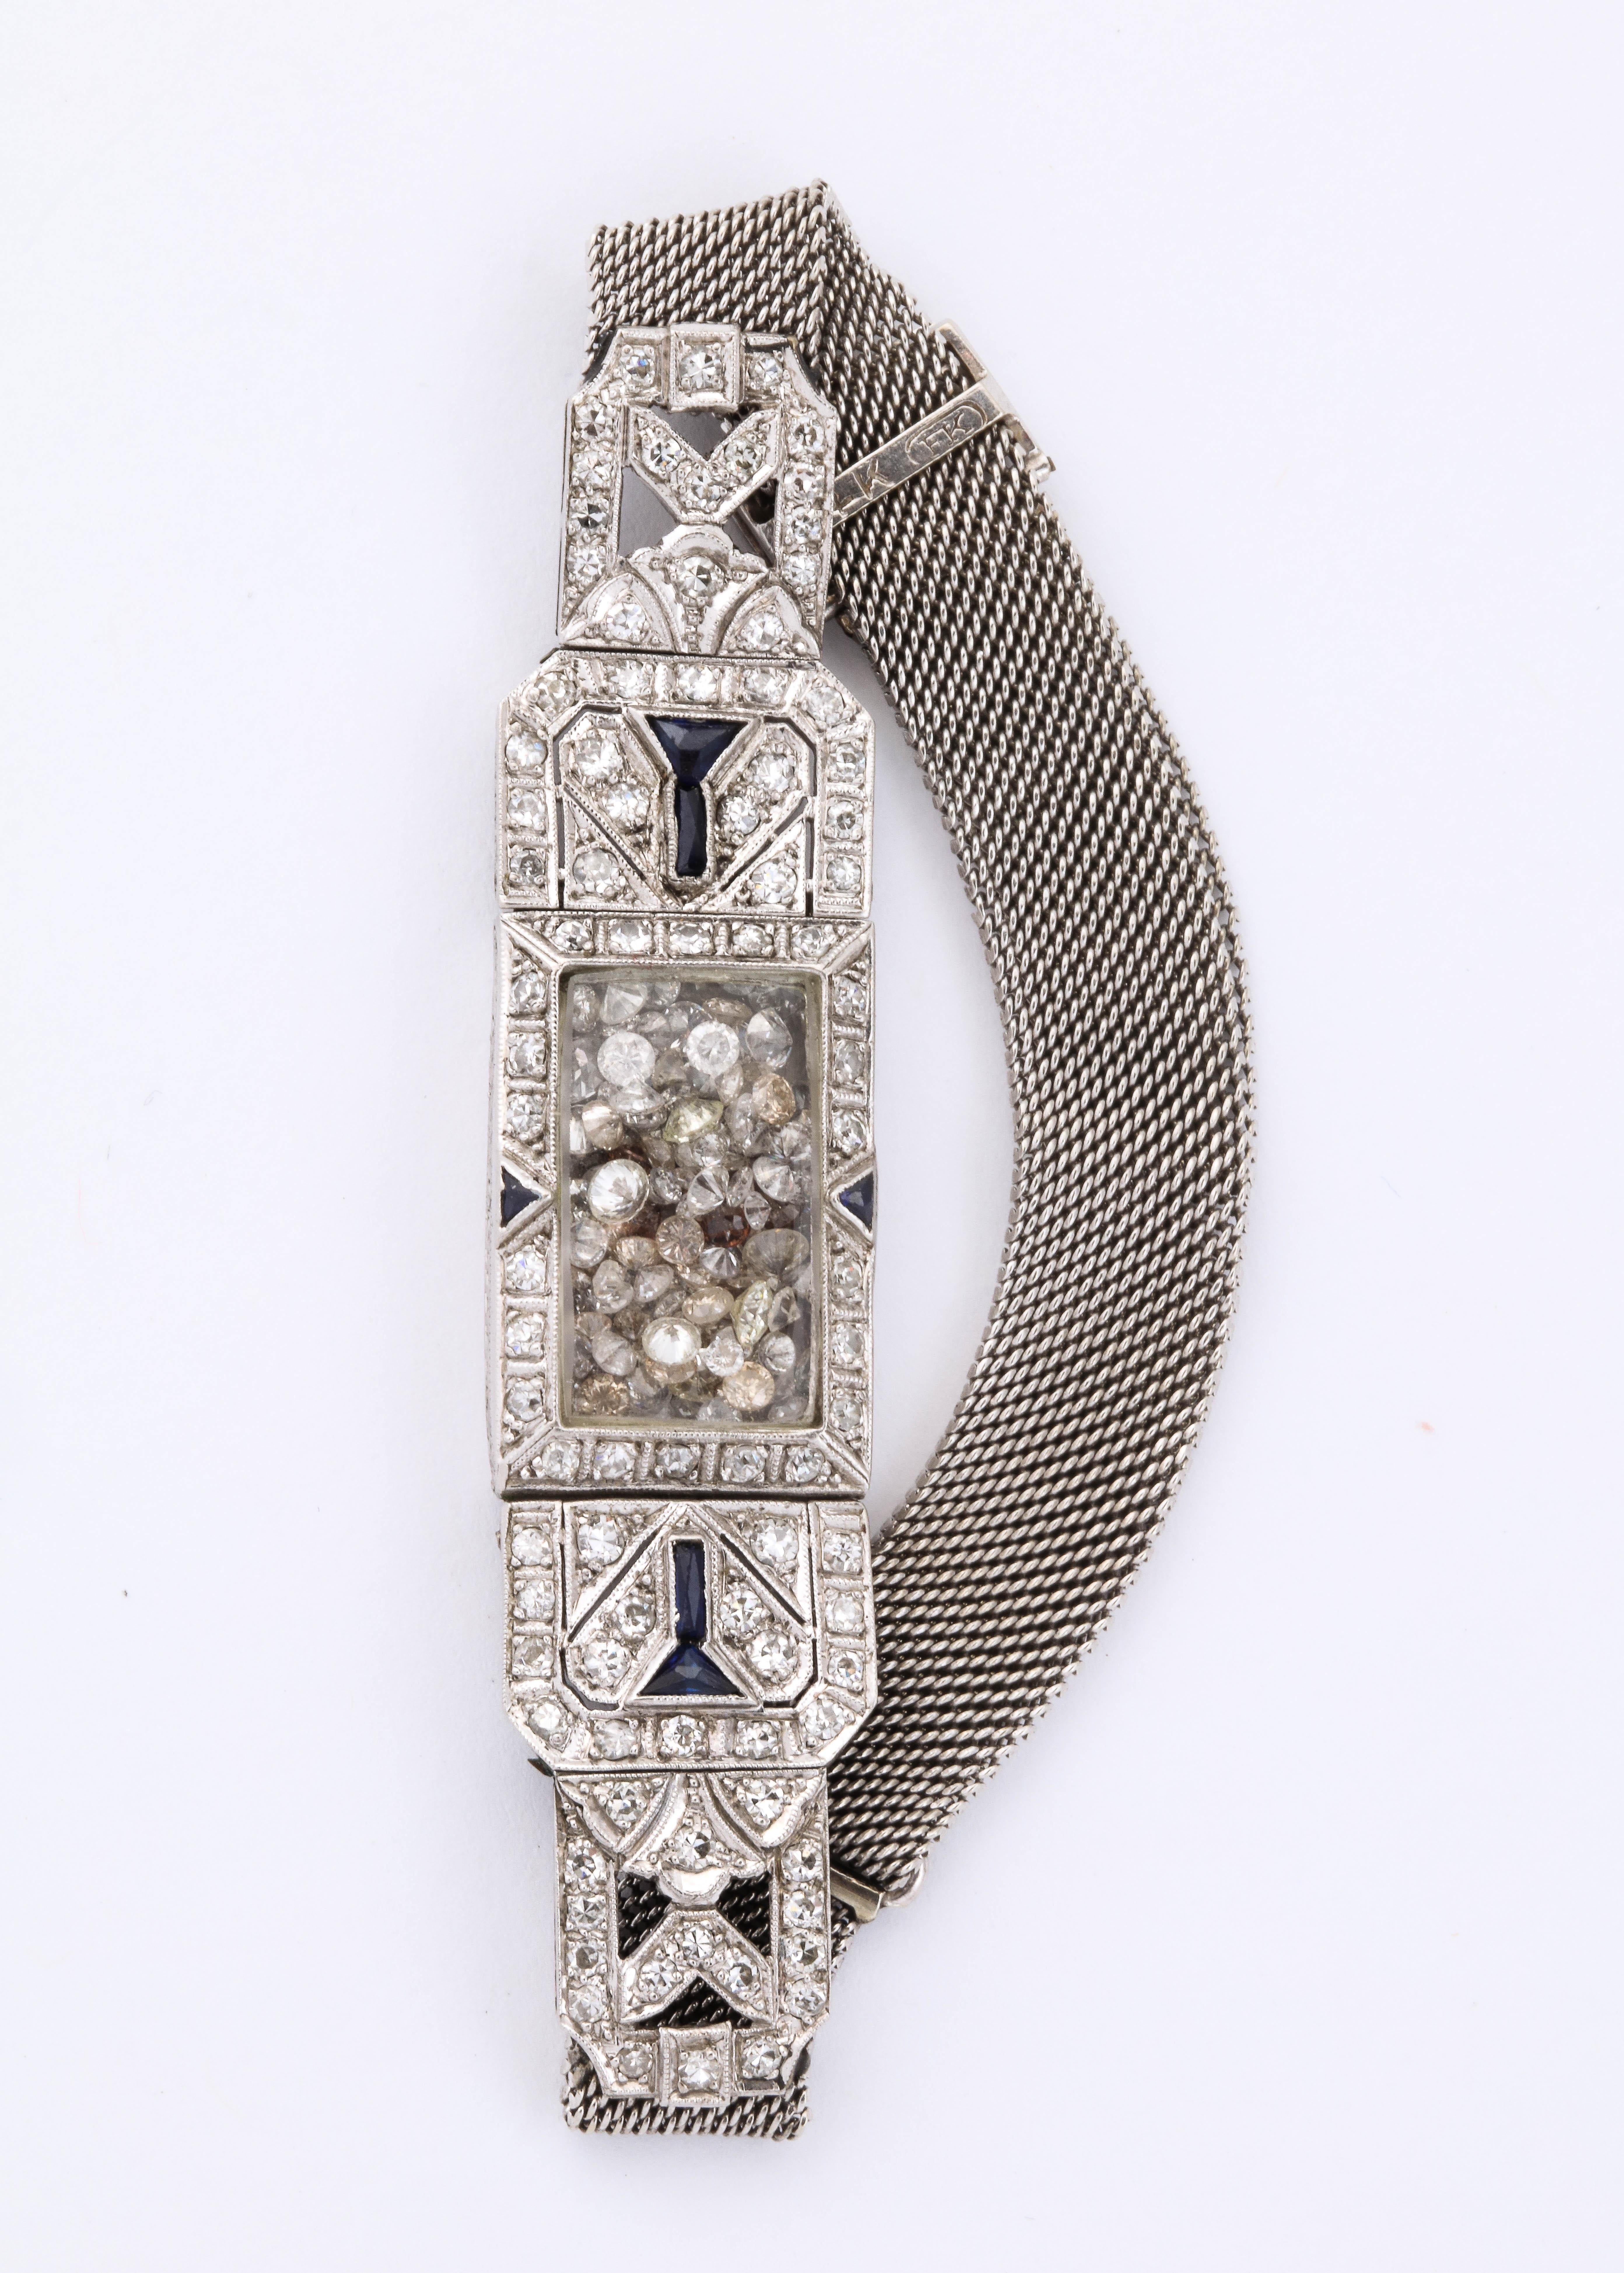 Dies ist eine wiederverwendete Diamant- und Platinuhr, in der 2 Karat alte Diamanten an der Stelle schwimmen, wo der Zeitmesser war.  Die Uhr ist originell mit Diamantplaketten im Deko-Design und einigen Onyx-Akzenten.
Es sieht alleine toll aus und